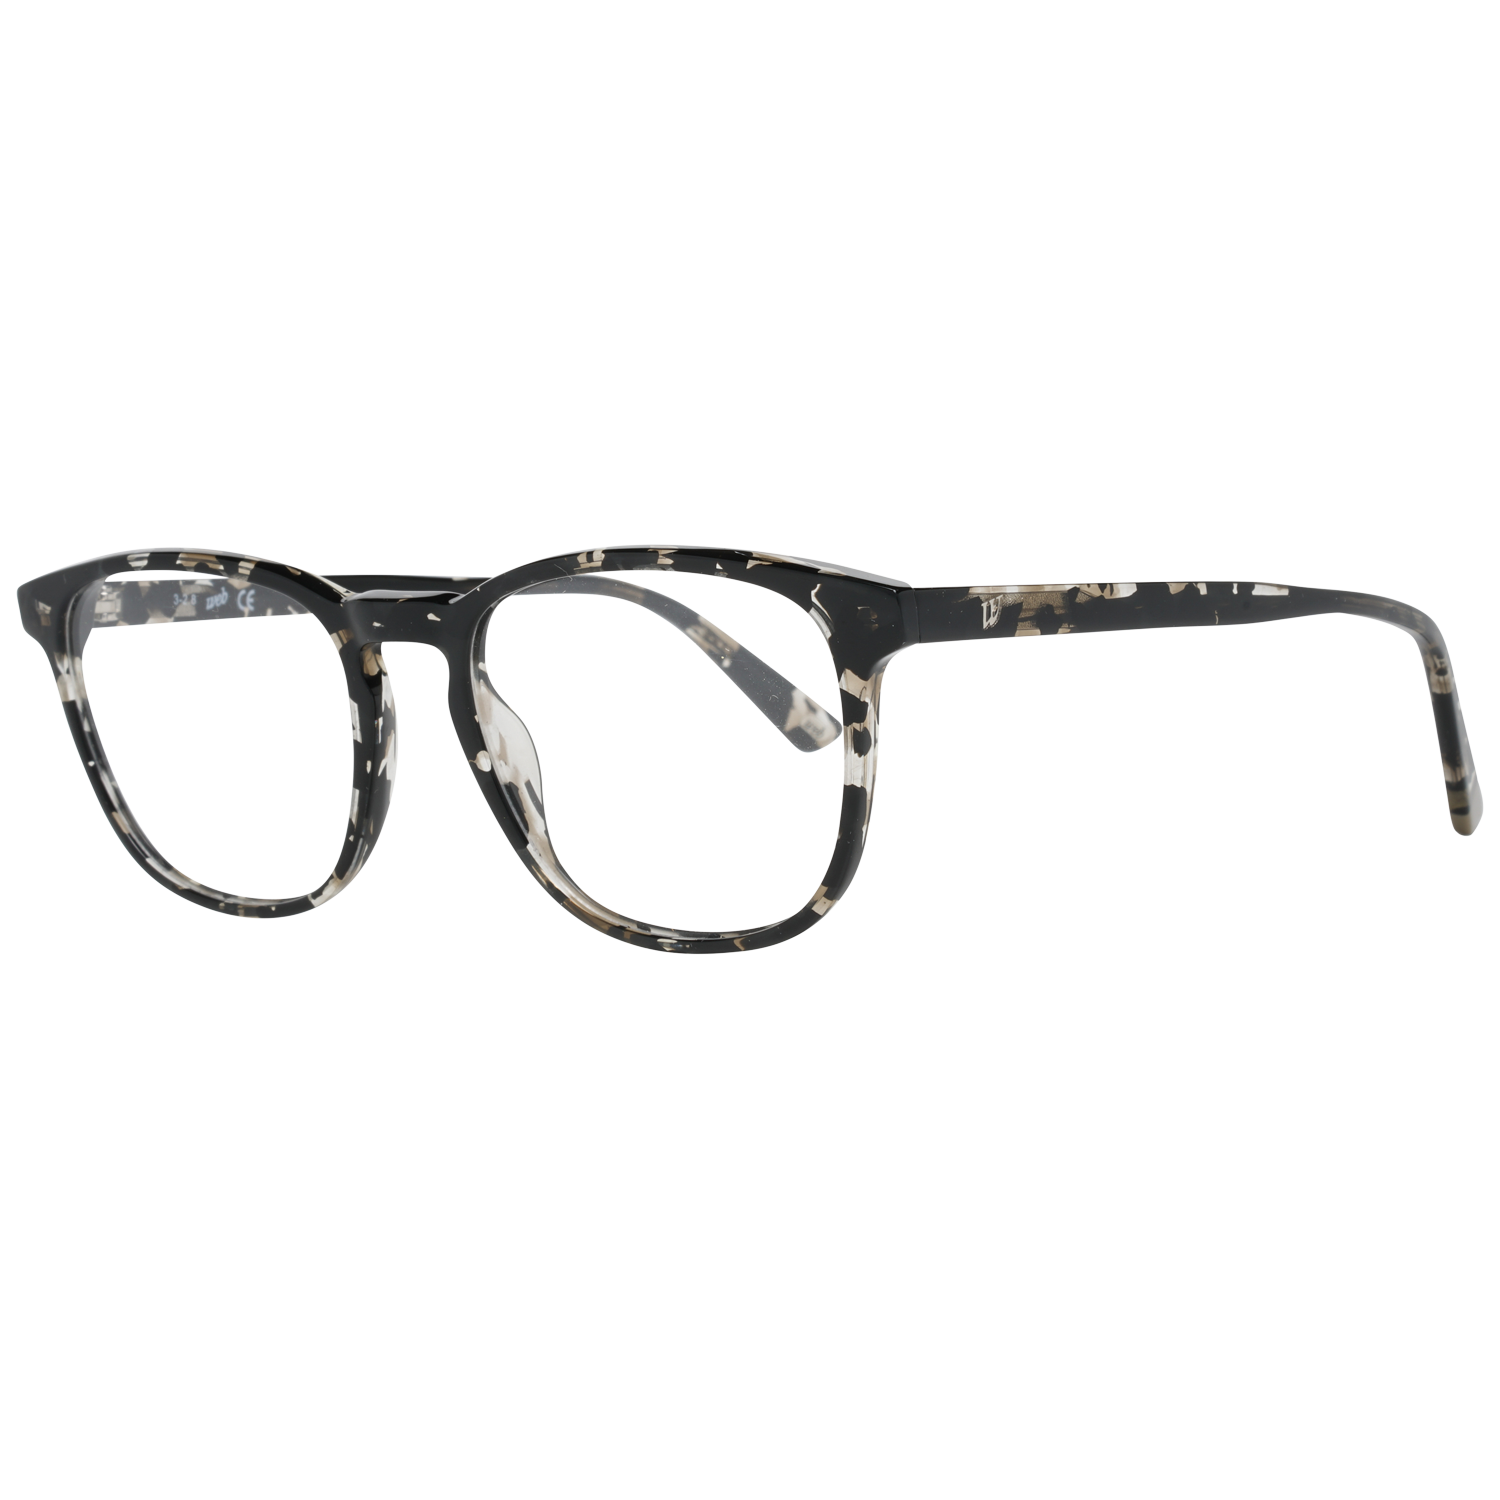 Web Frames Web Glasses Optical Frame WE5293 055 52 Eyeglasses Eyewear UK USA Australia 